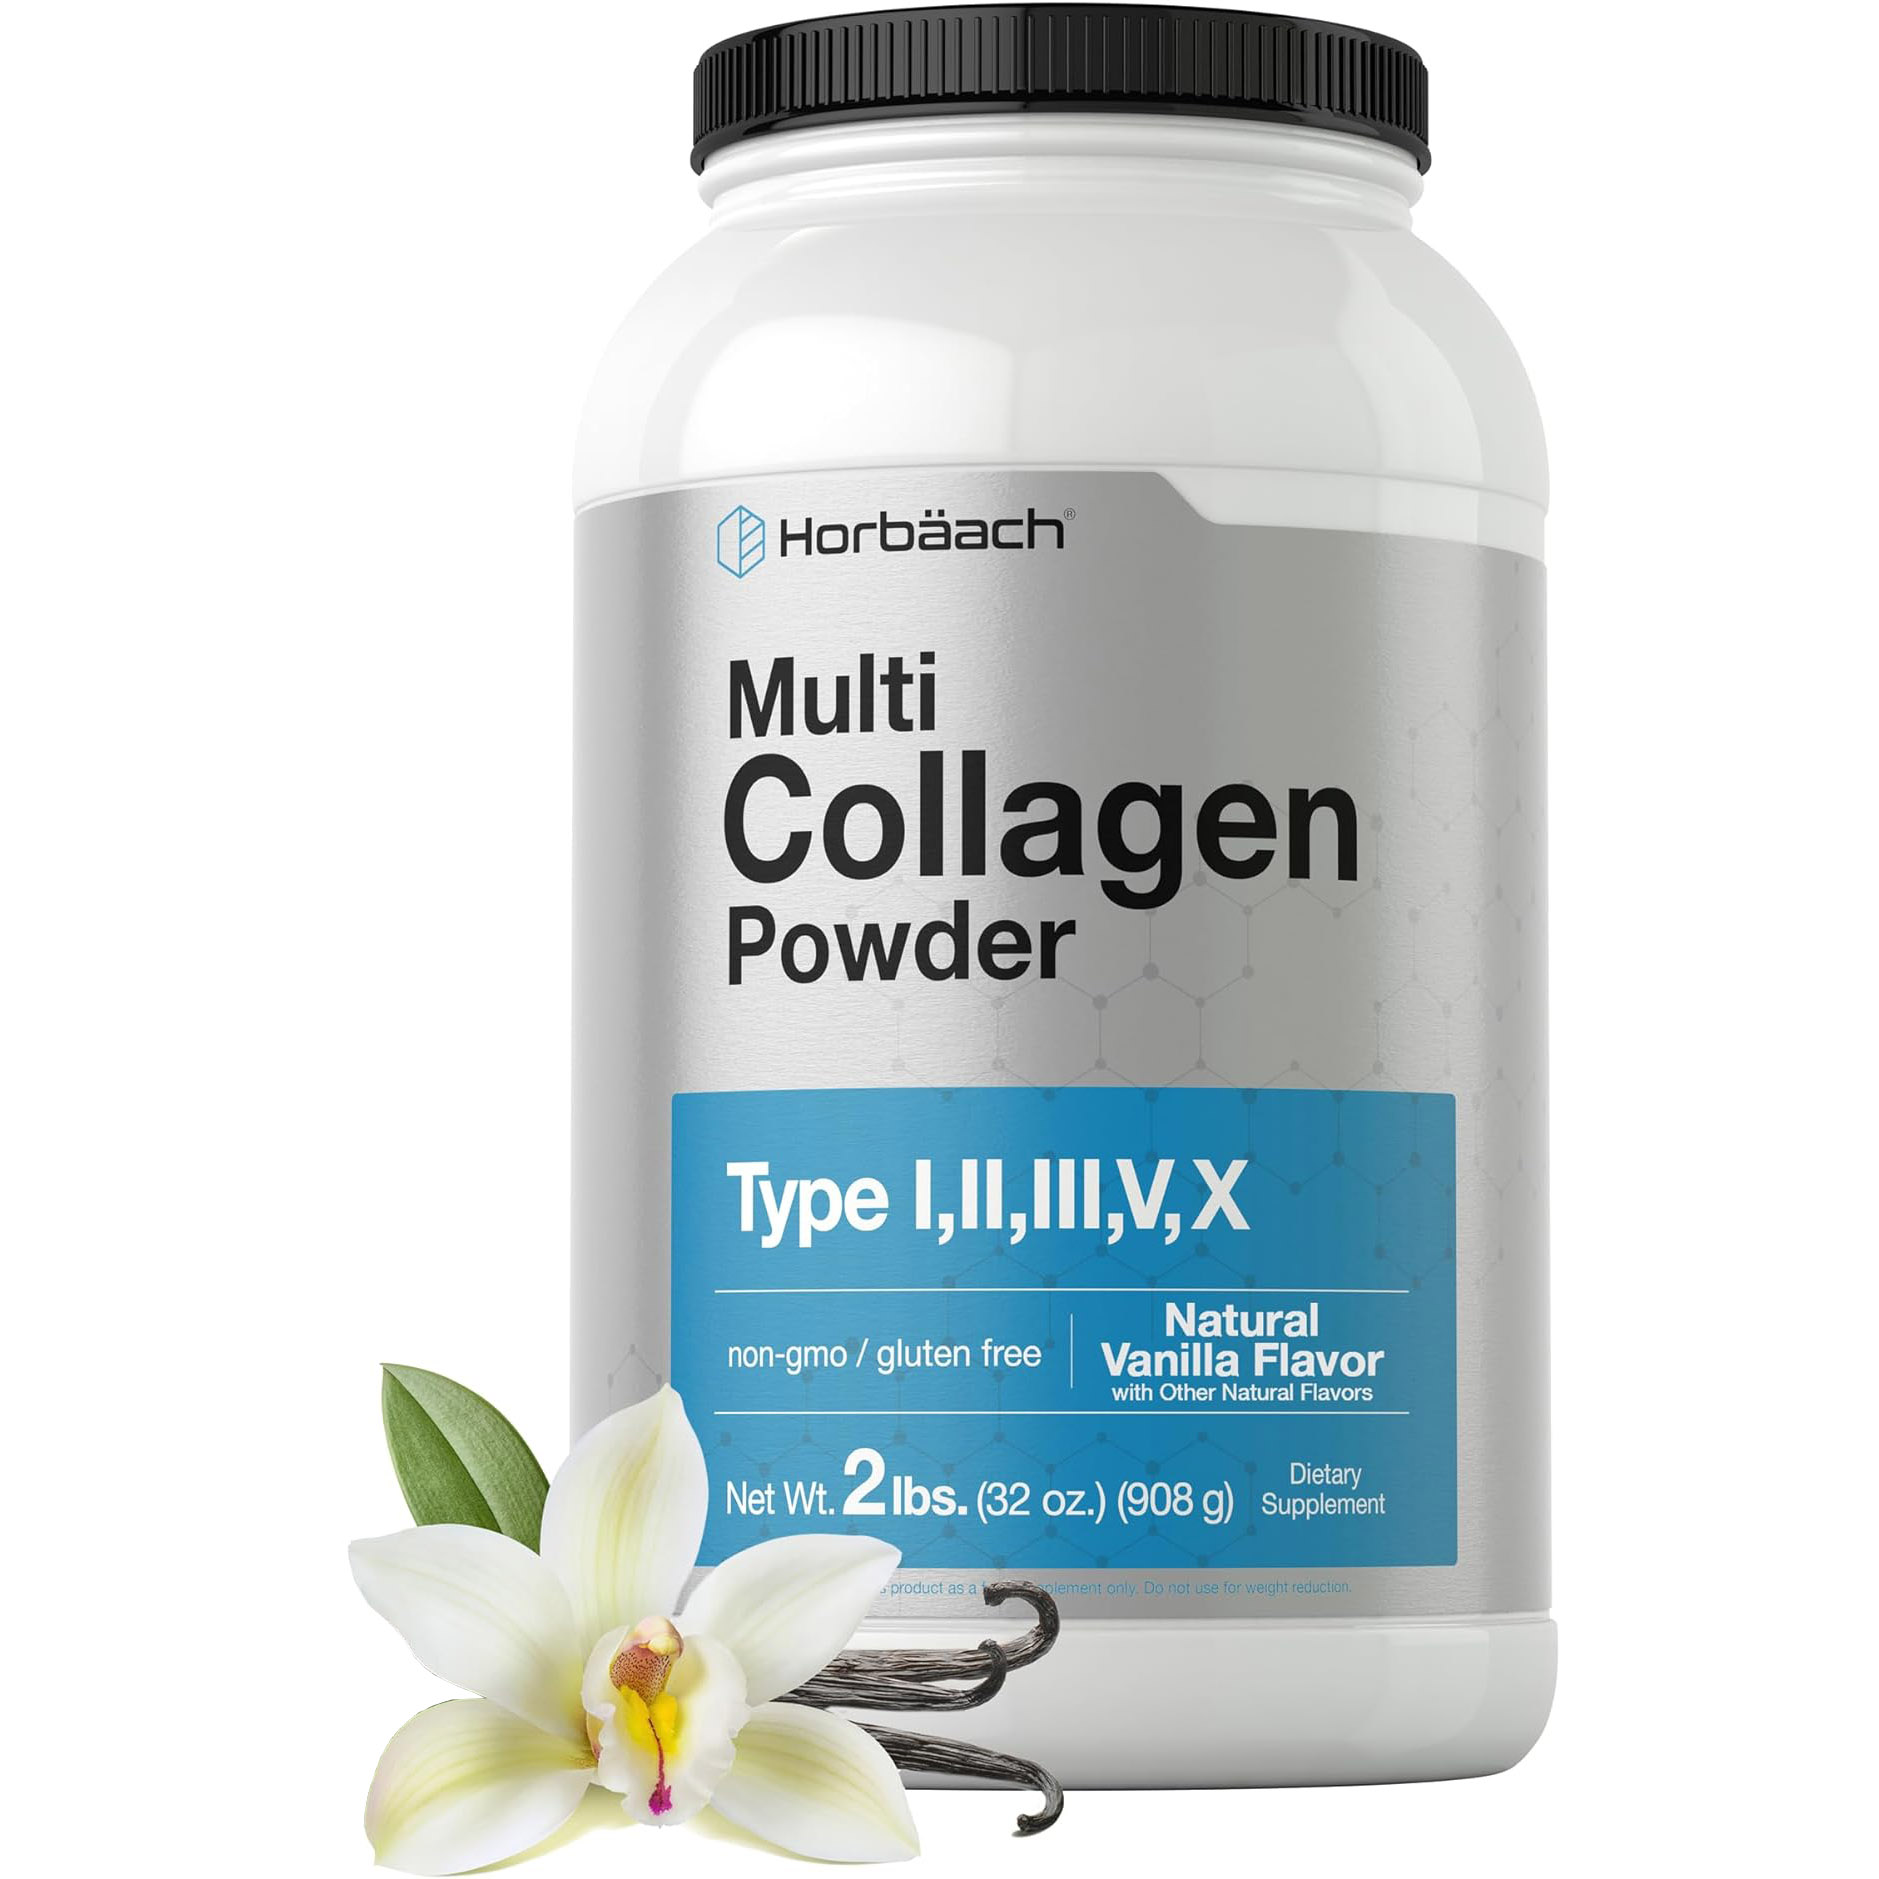 Коллаген Horbaach Multi Powder Vanilla, 908 гр коллаген lewis labs multi peptides type i ii iii v x proteox 180 капсул